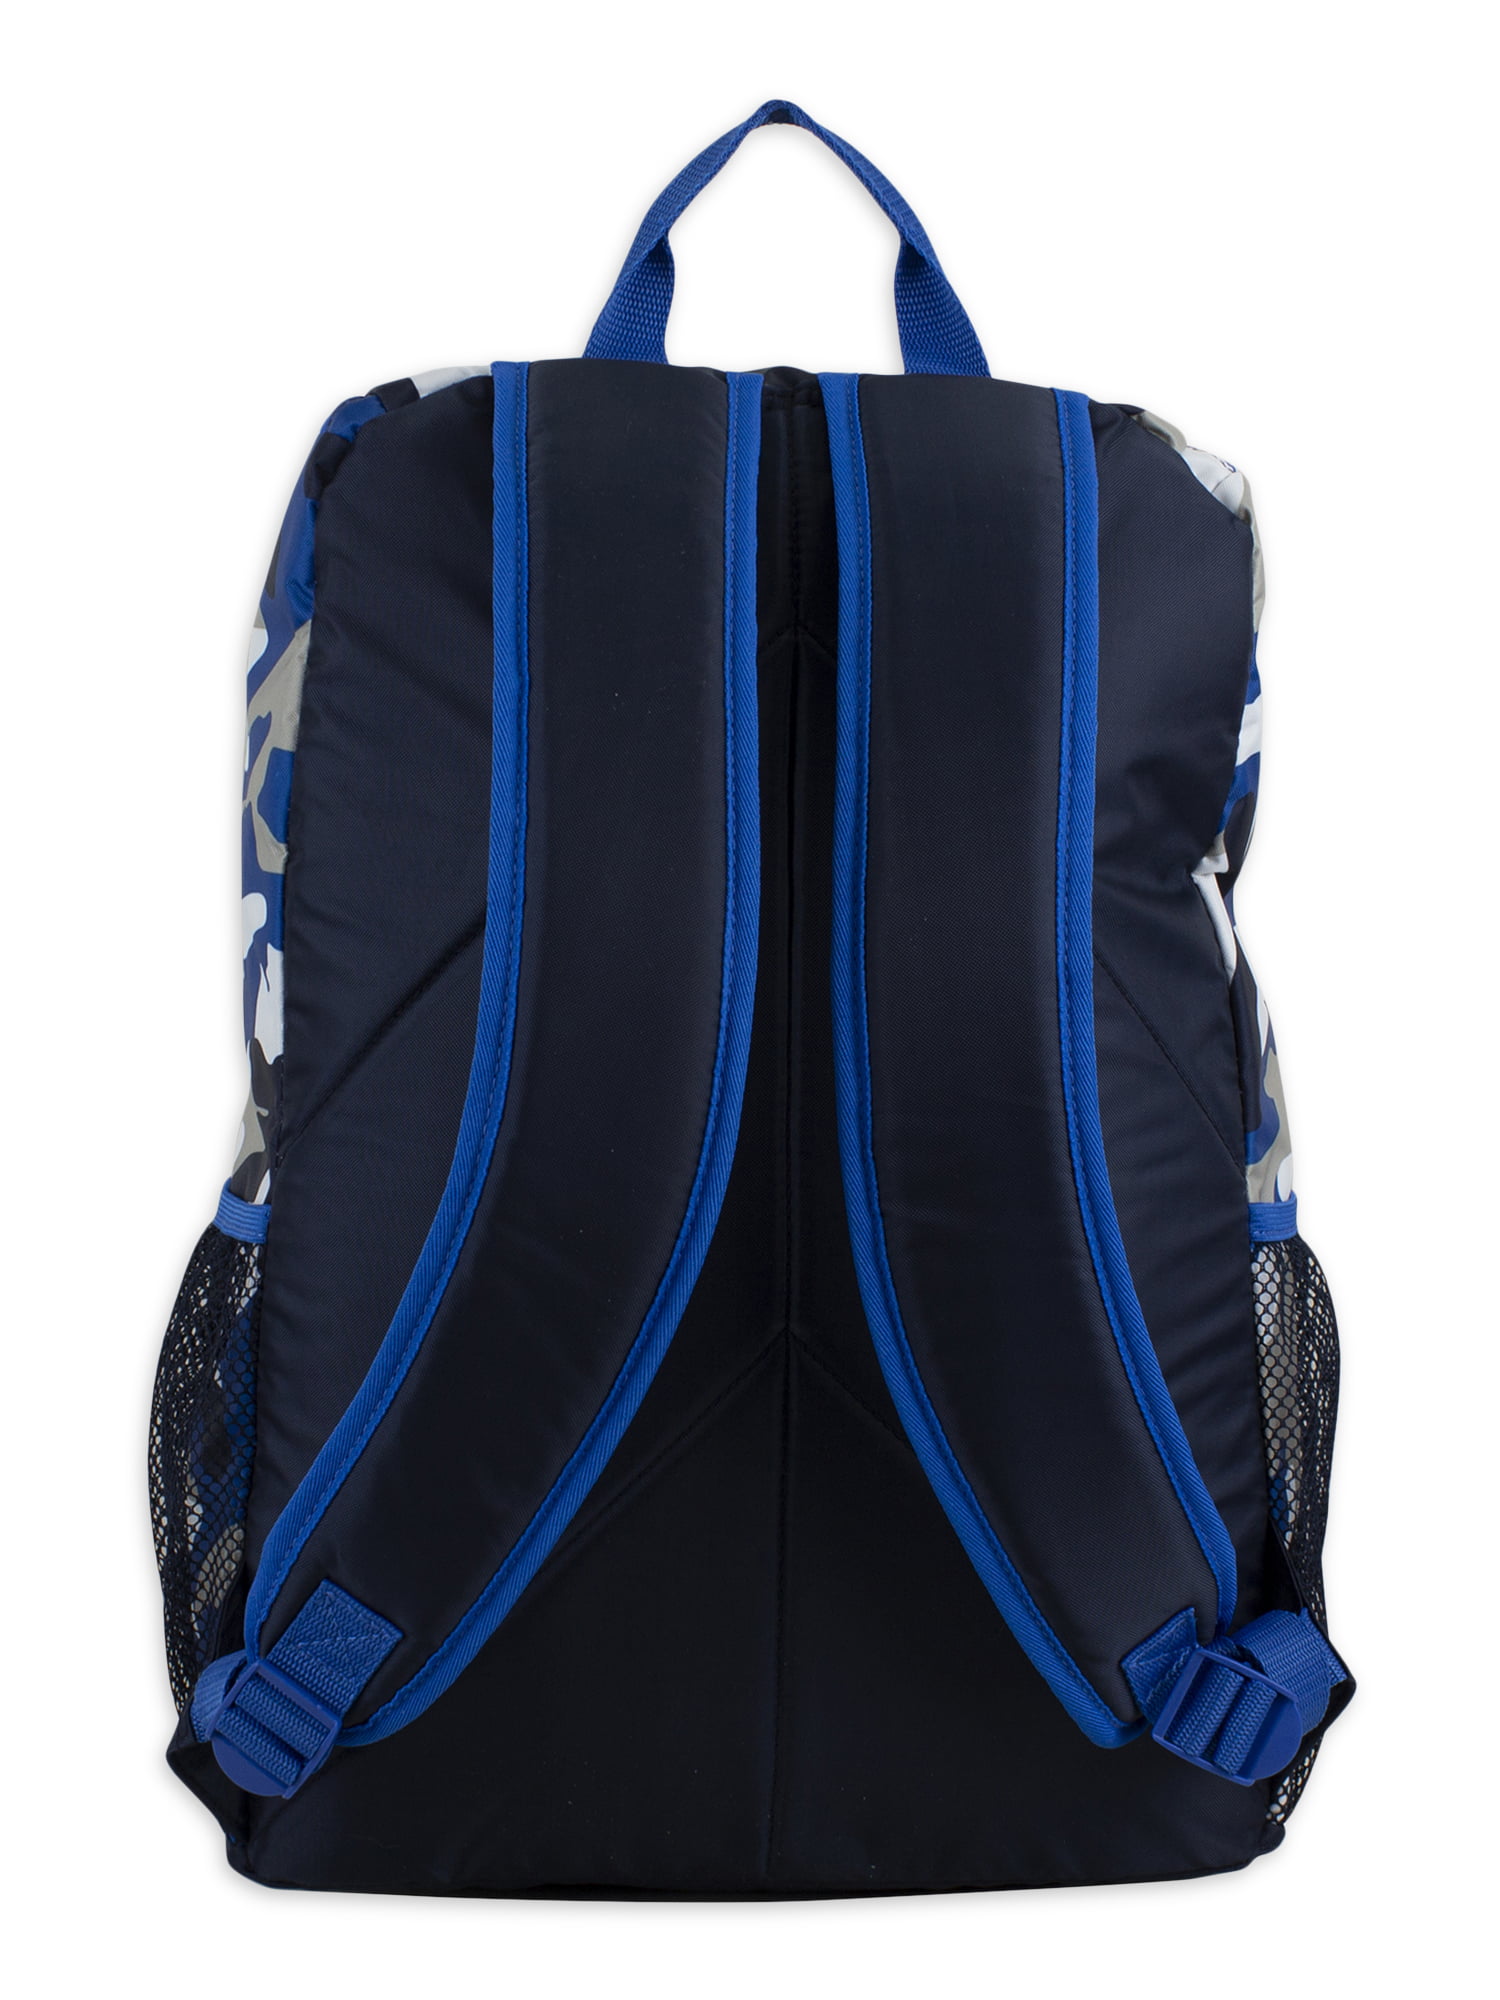 Up We Go Backpack & Lunch Bag Set, Blue